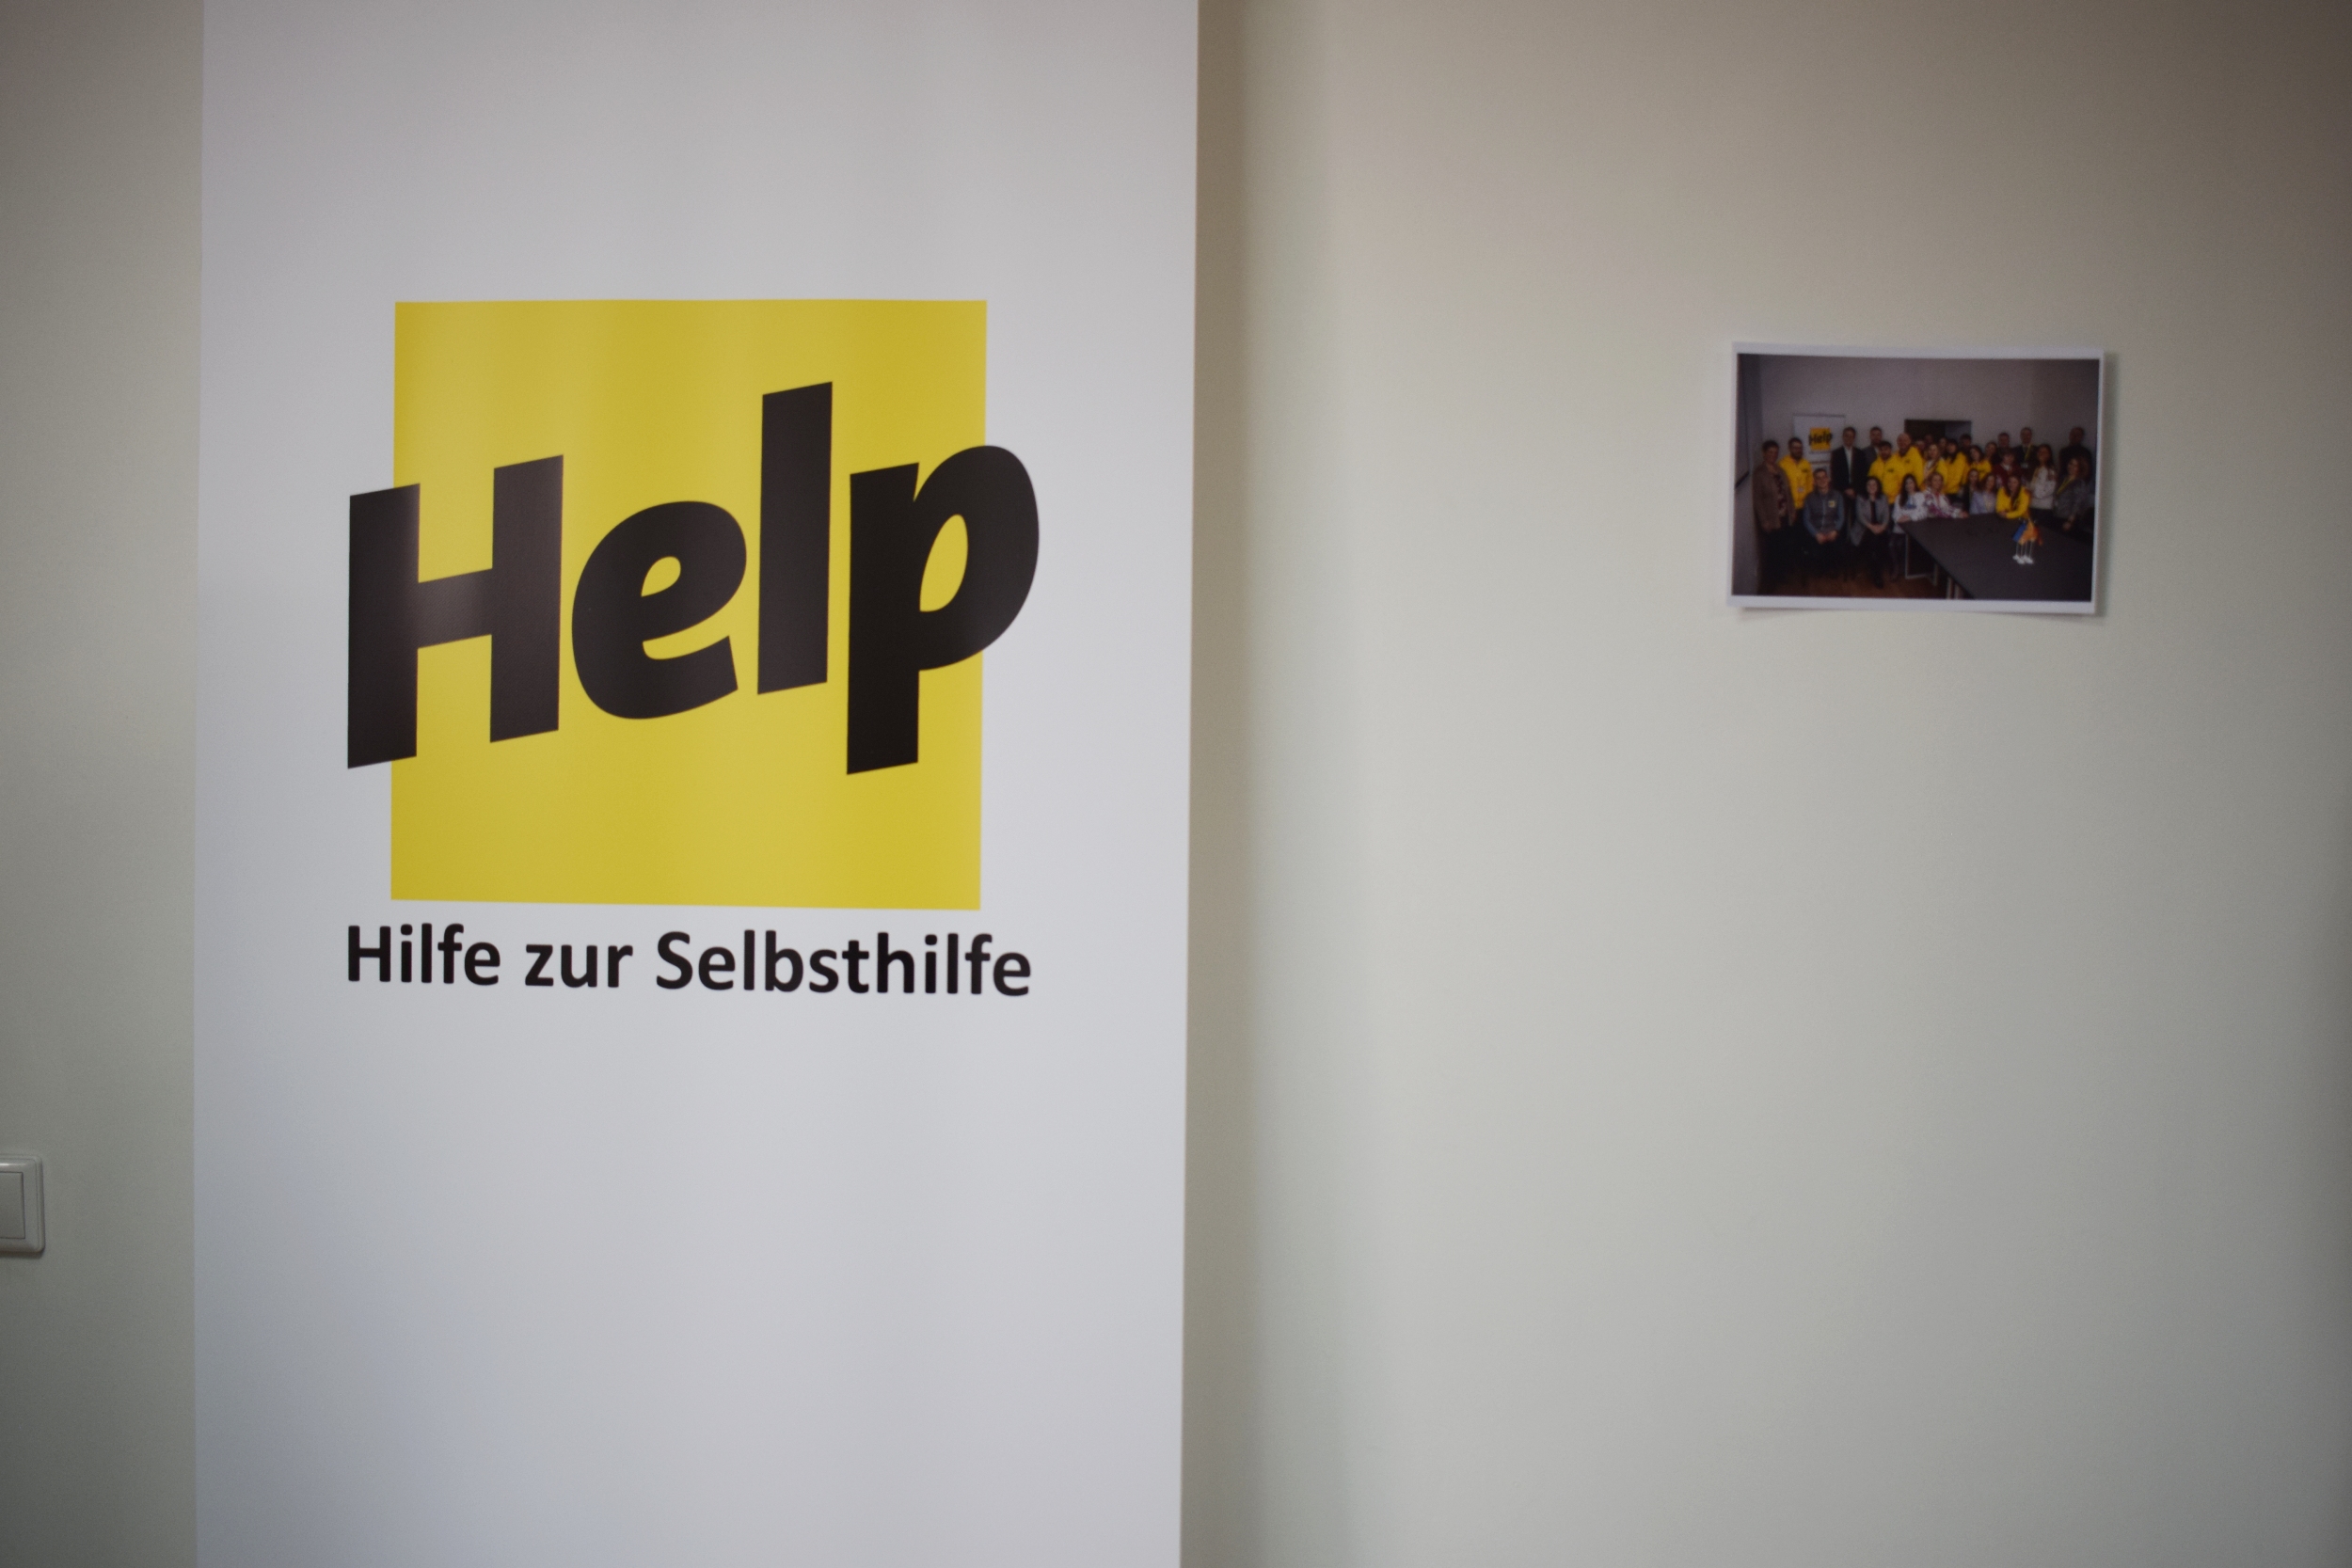 Новий офіс та громадський простір міжнародної гуманітарної організації Help - Hilfe zur selbsthilfe відкрили в Ужгороді (ФОТО)